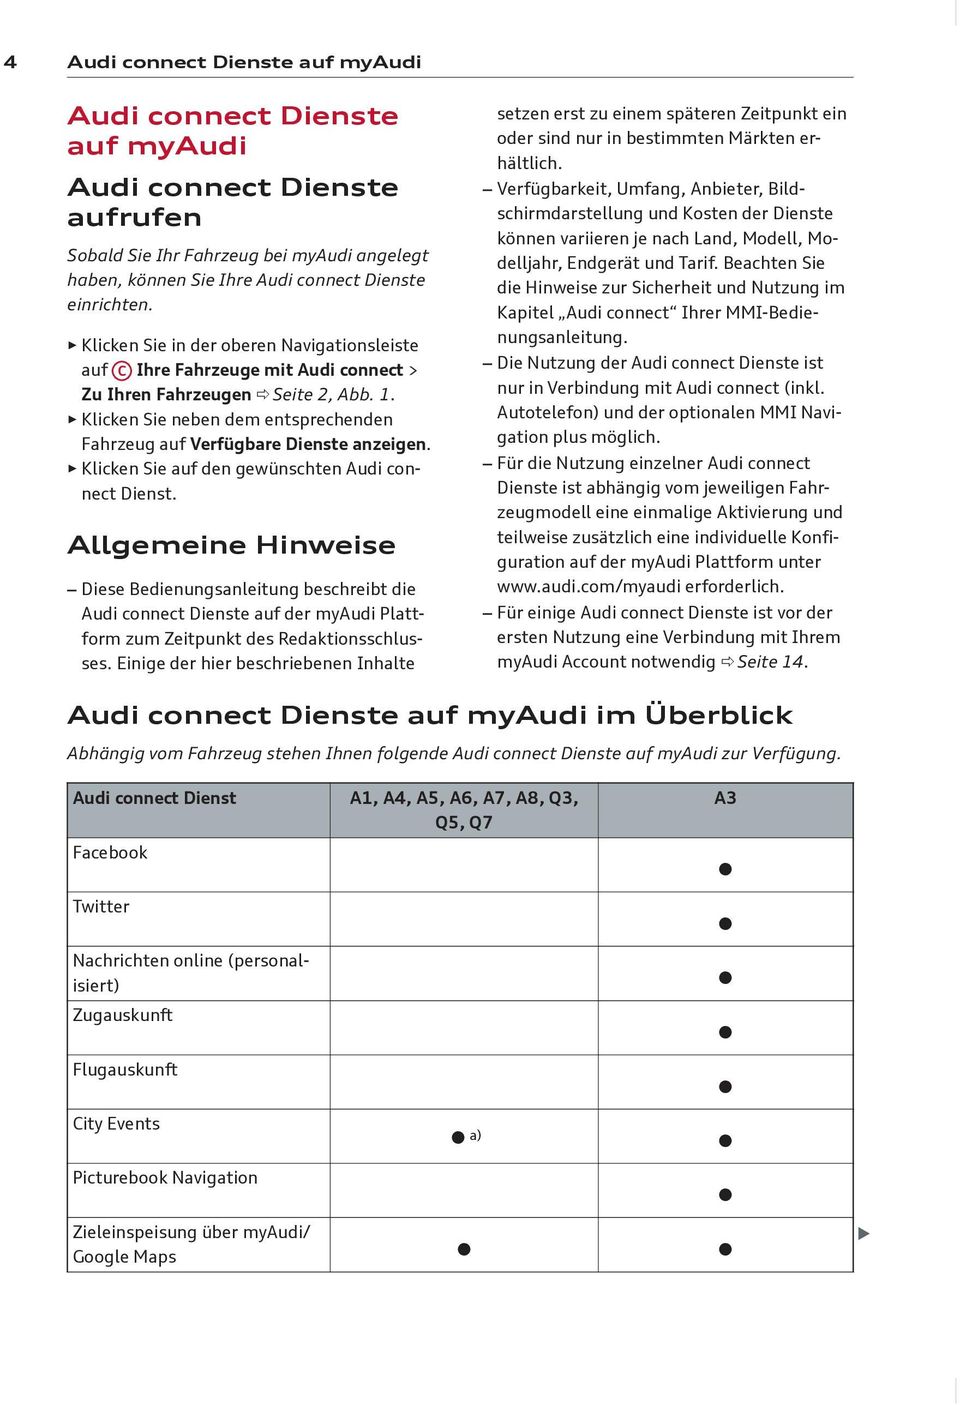 Klicken Sie neben dem entsprechenden Fahrzeug auf Verfügbare Dienste anzeigen. Klicken Sie auf den gewünschten Audi connect Dienst.